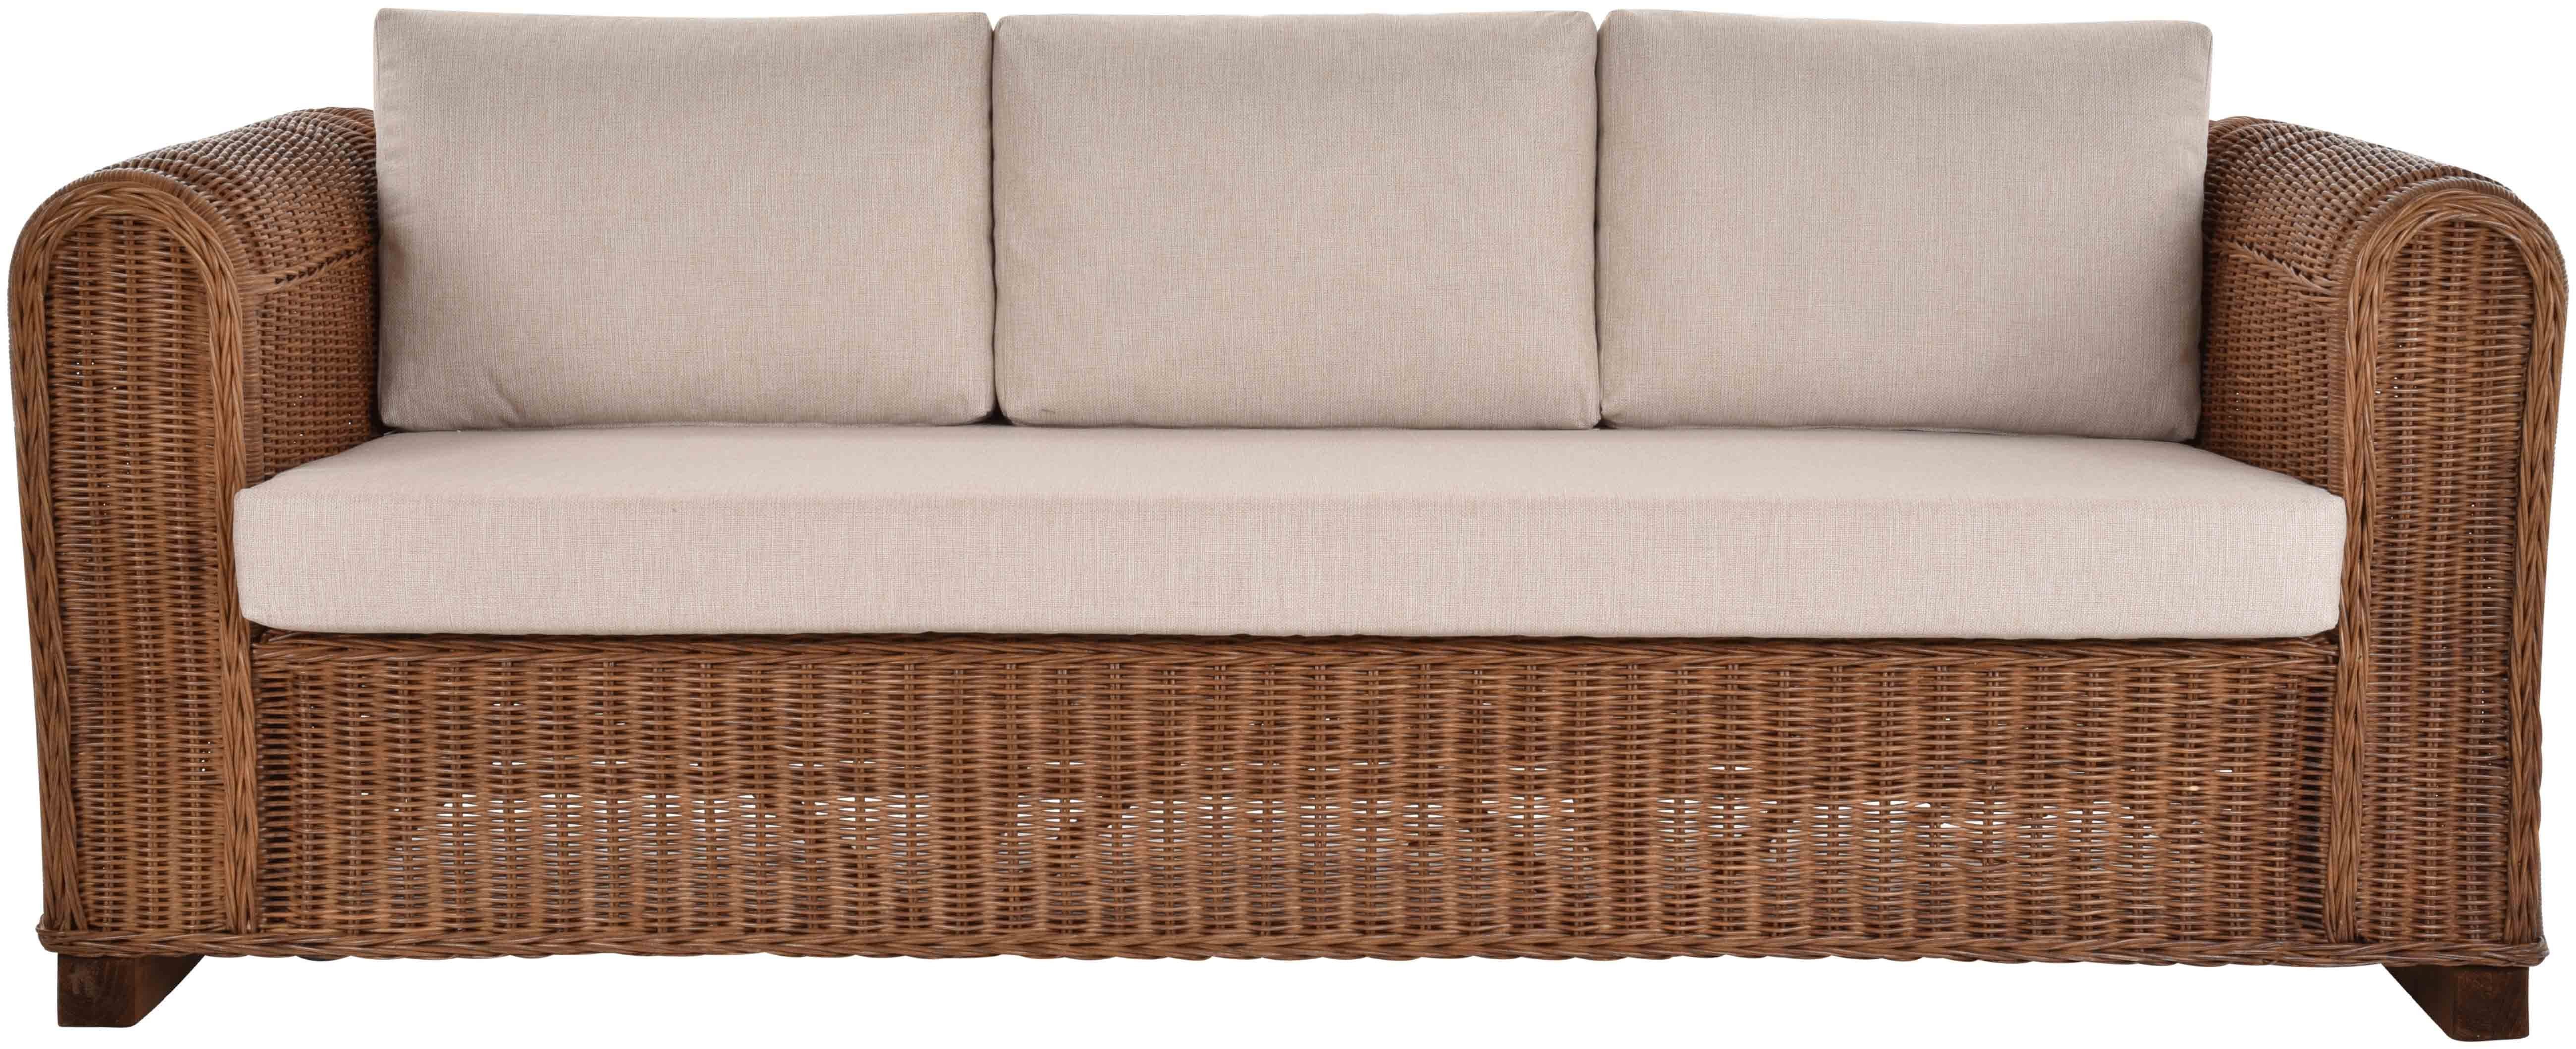 Dreisitzer Farbe IO Couch Braun Home Rattansofa Rattan Wohnzimmer, Wohnzimmersofa Loungesofa für 3 Krines Personen